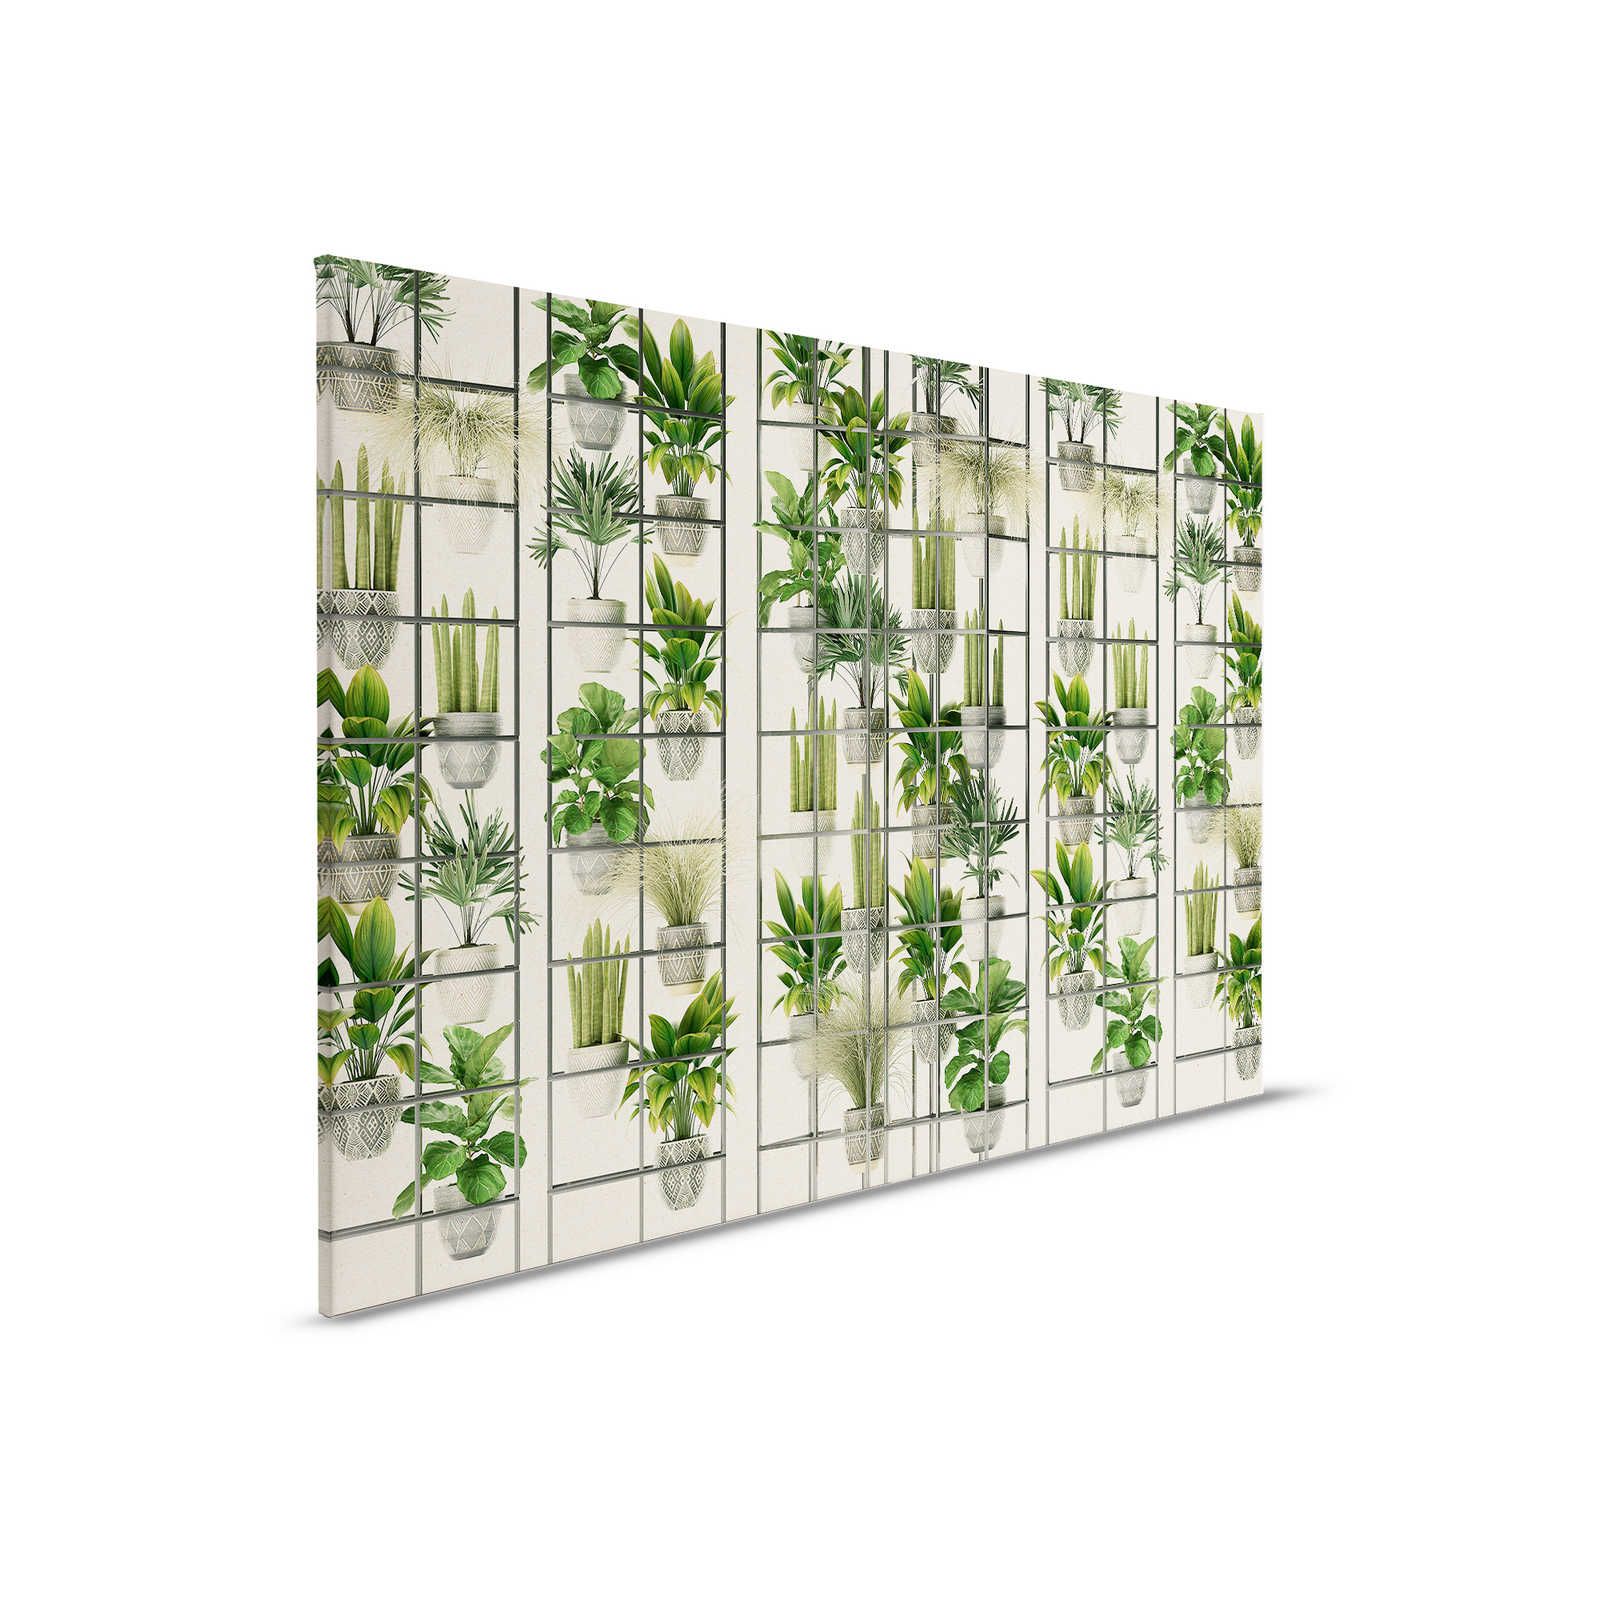 Plant Shop 2 - Tableau de plantes moderne sur toile vert & gris - 0,90 m x 0,60 m
